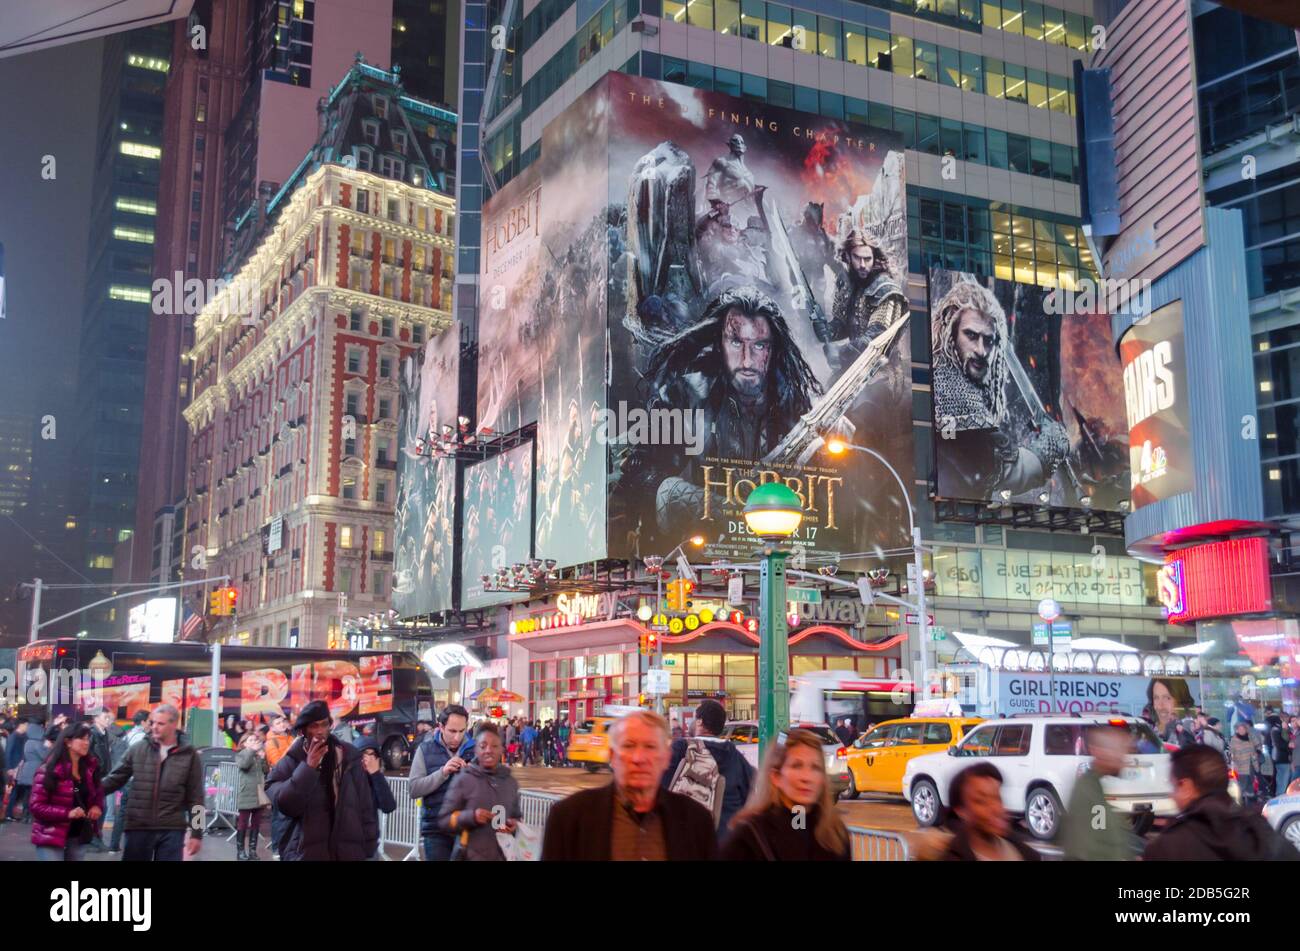 New York Manhattan Times Square piena di persone che festeggiano il Natale. Edifici imponenti con schermi al neon, luci brillanti e affissioni. New York City, Stati Uniti Foto Stock